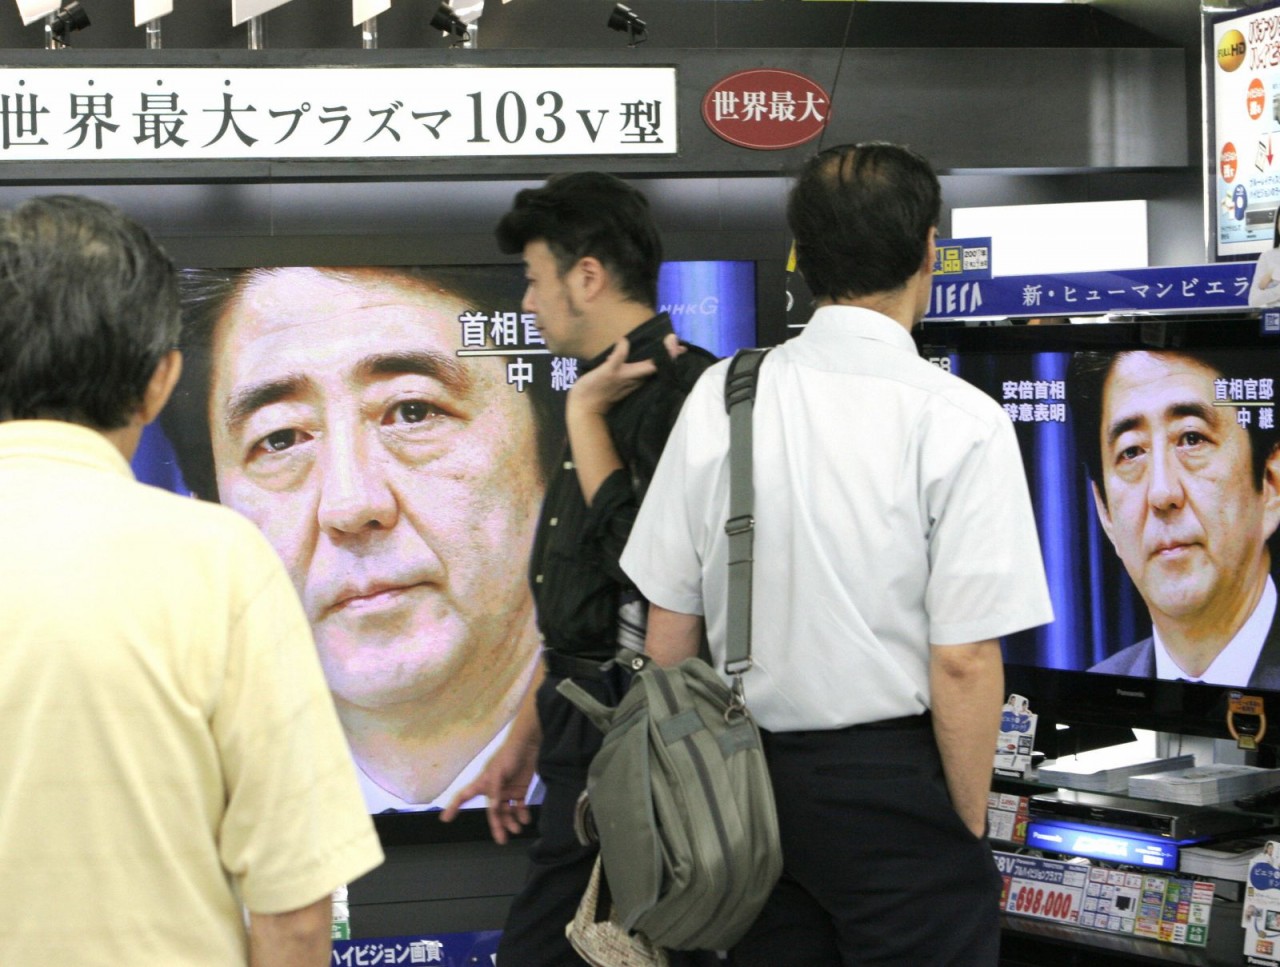 Màn hình truyền hình chiếu cảnh Abe tuyên bố từ chức thủ tướng vào năm 2007. Ông mới nắm quyền chưa đầy một năm, nhưng một loạt vụ bê bối đã cản trở chương trình nghị sự của ông và khiến tỷ lệ phê duyệt của ông giảm mạnh.Yoshikazu Tsuno / AFP / Getty Imag